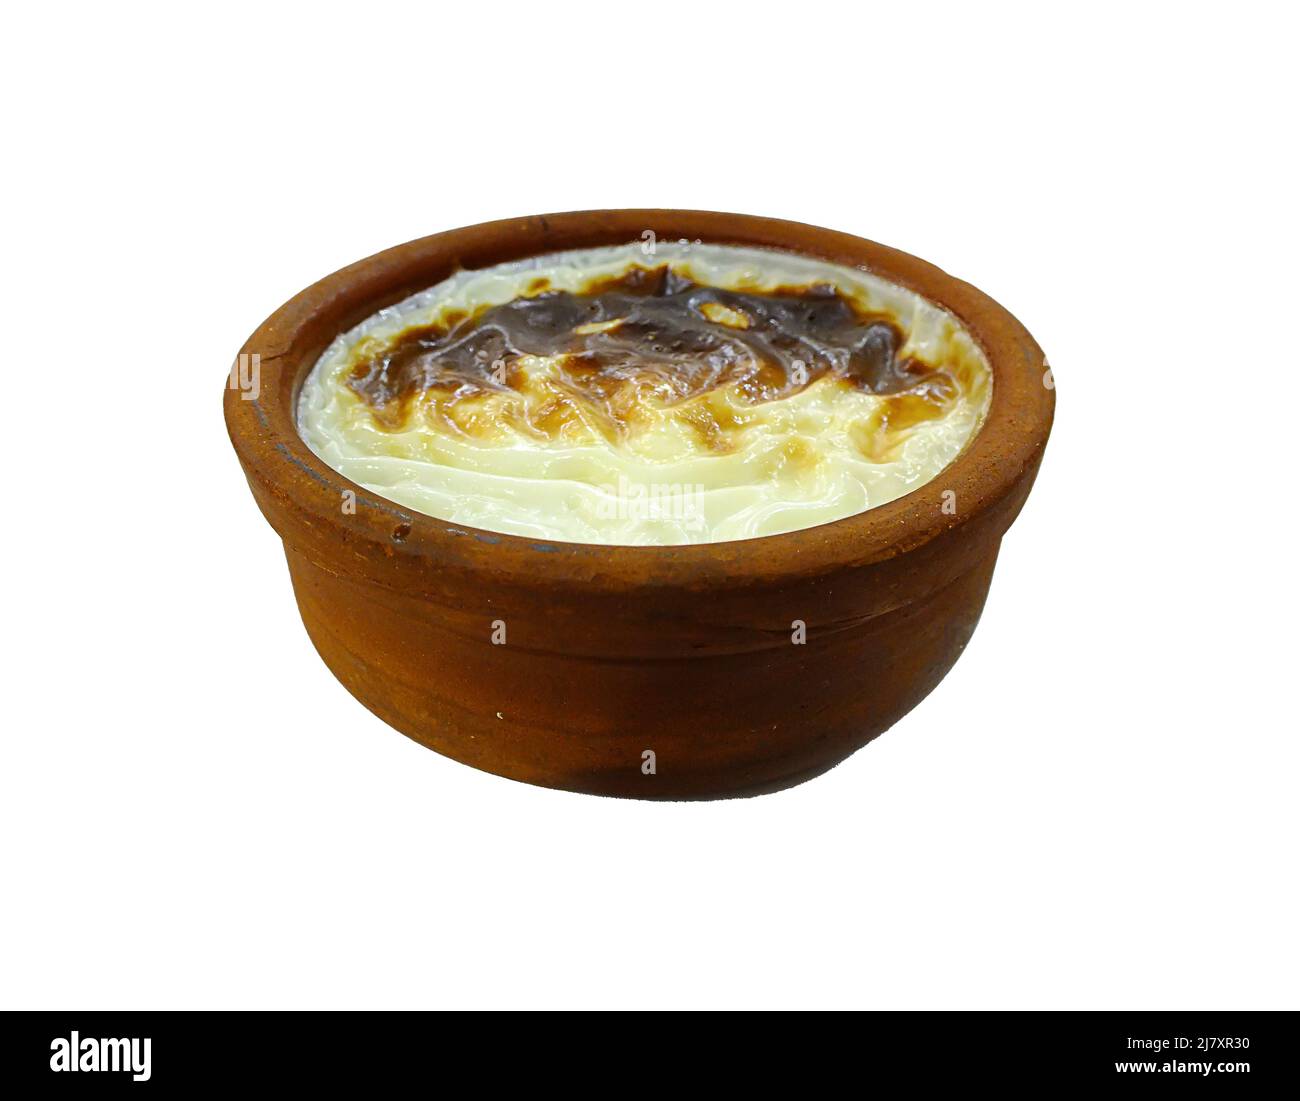 Reis-Pudding mit Störung stockbild. Bild von nachtisch - 25440093